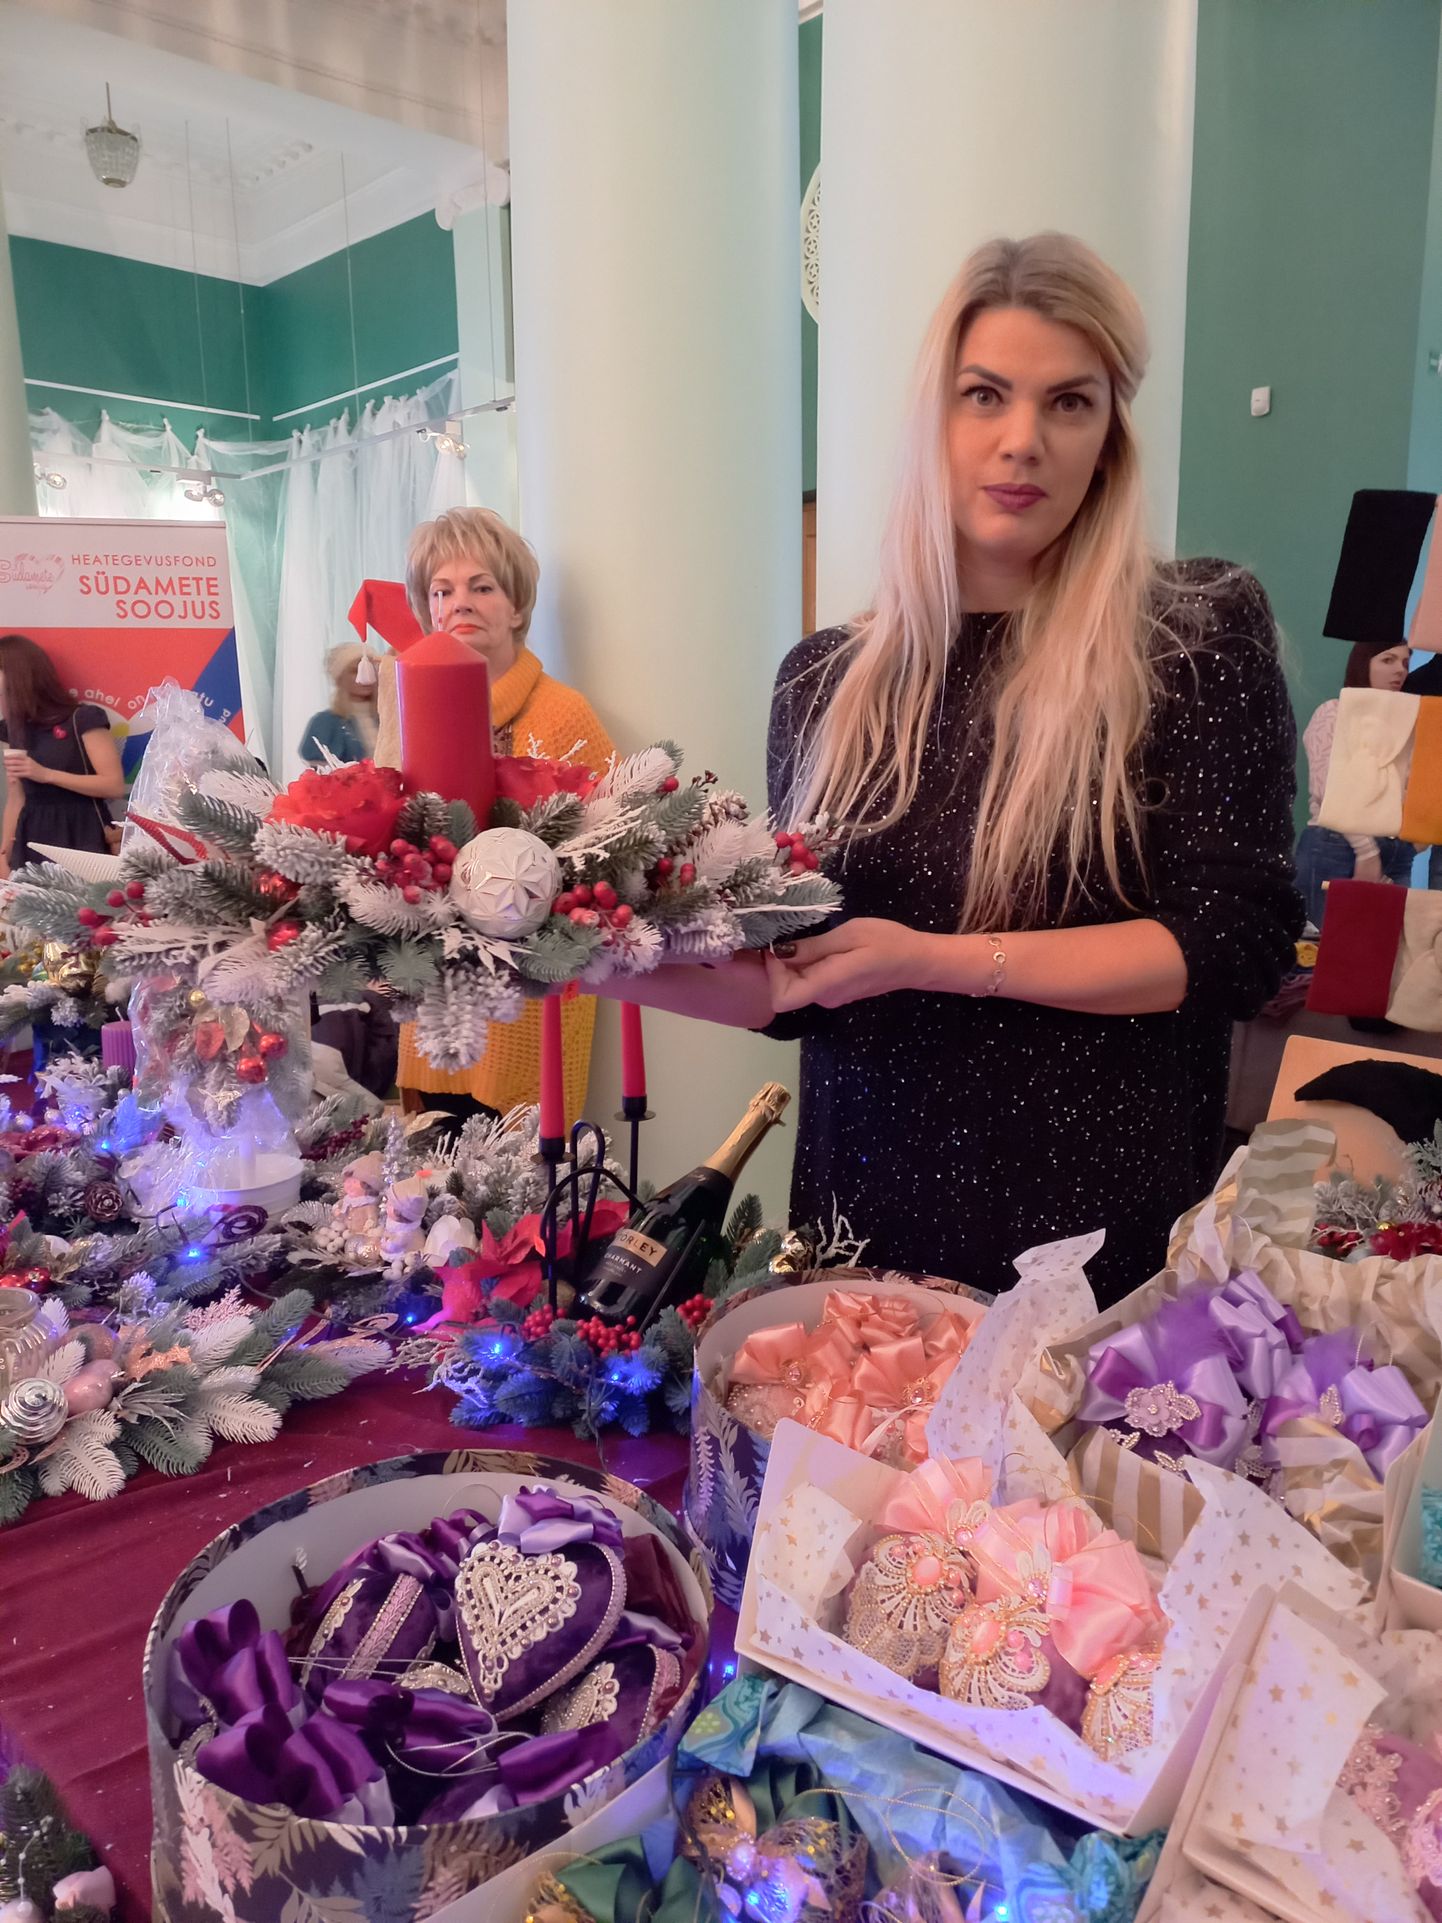 Валерия Приходько в прошлом году удивила многообразием праздничных украшений и елочных игрушек, которые сделала собственными руками.